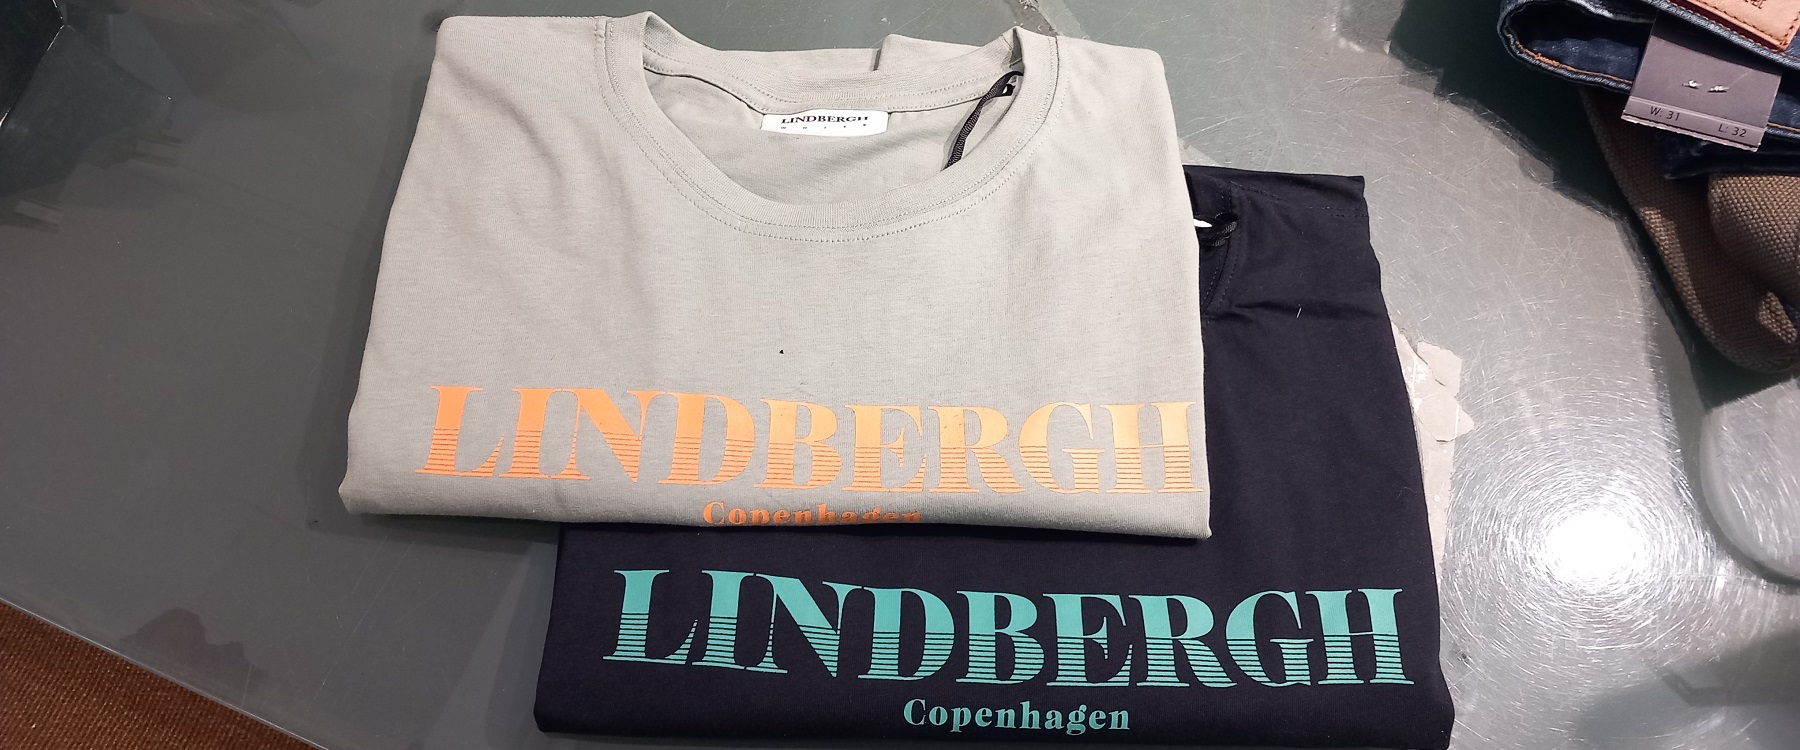 West House - Copenhagen T-shirt fra Lindbergh